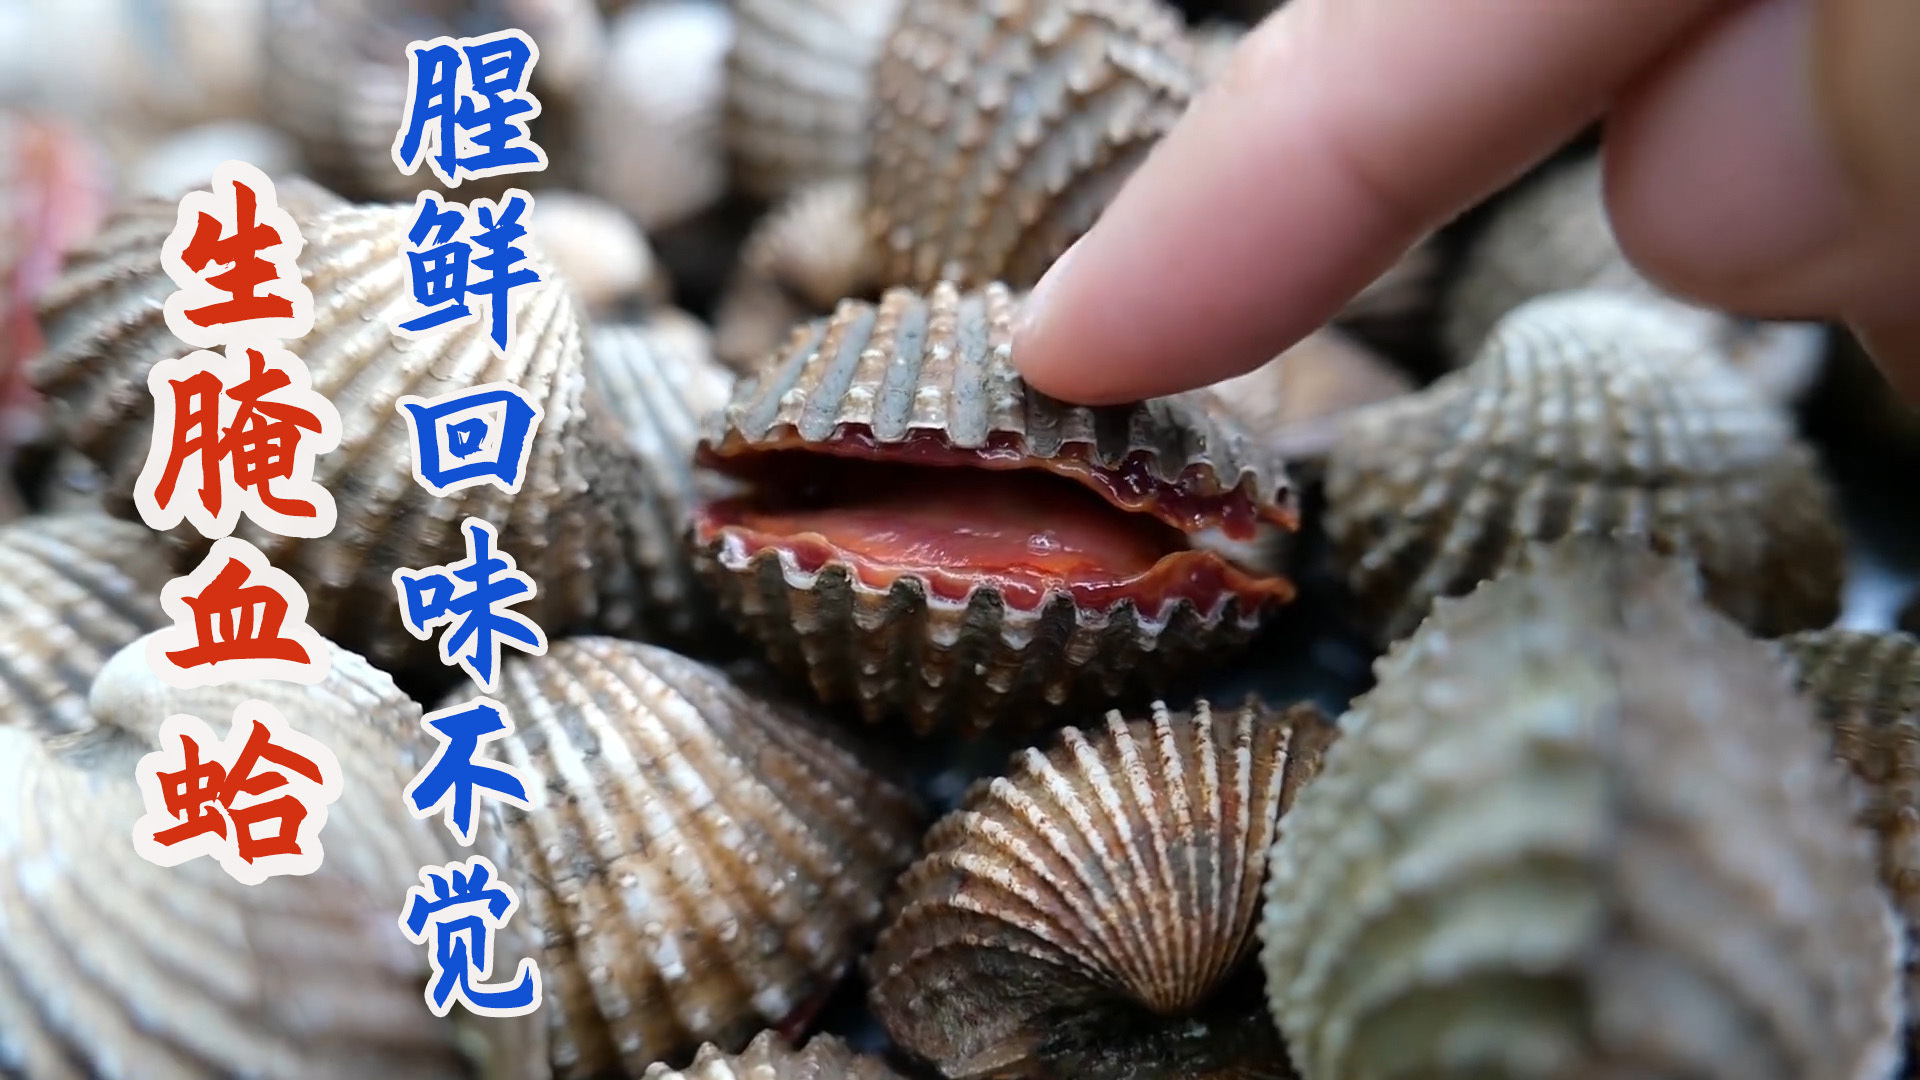 圆 红皮 文蛤壳 海蛤 蛤蜊壳 菜式摆设2~6cm 【综合车螺壳】-阿里巴巴